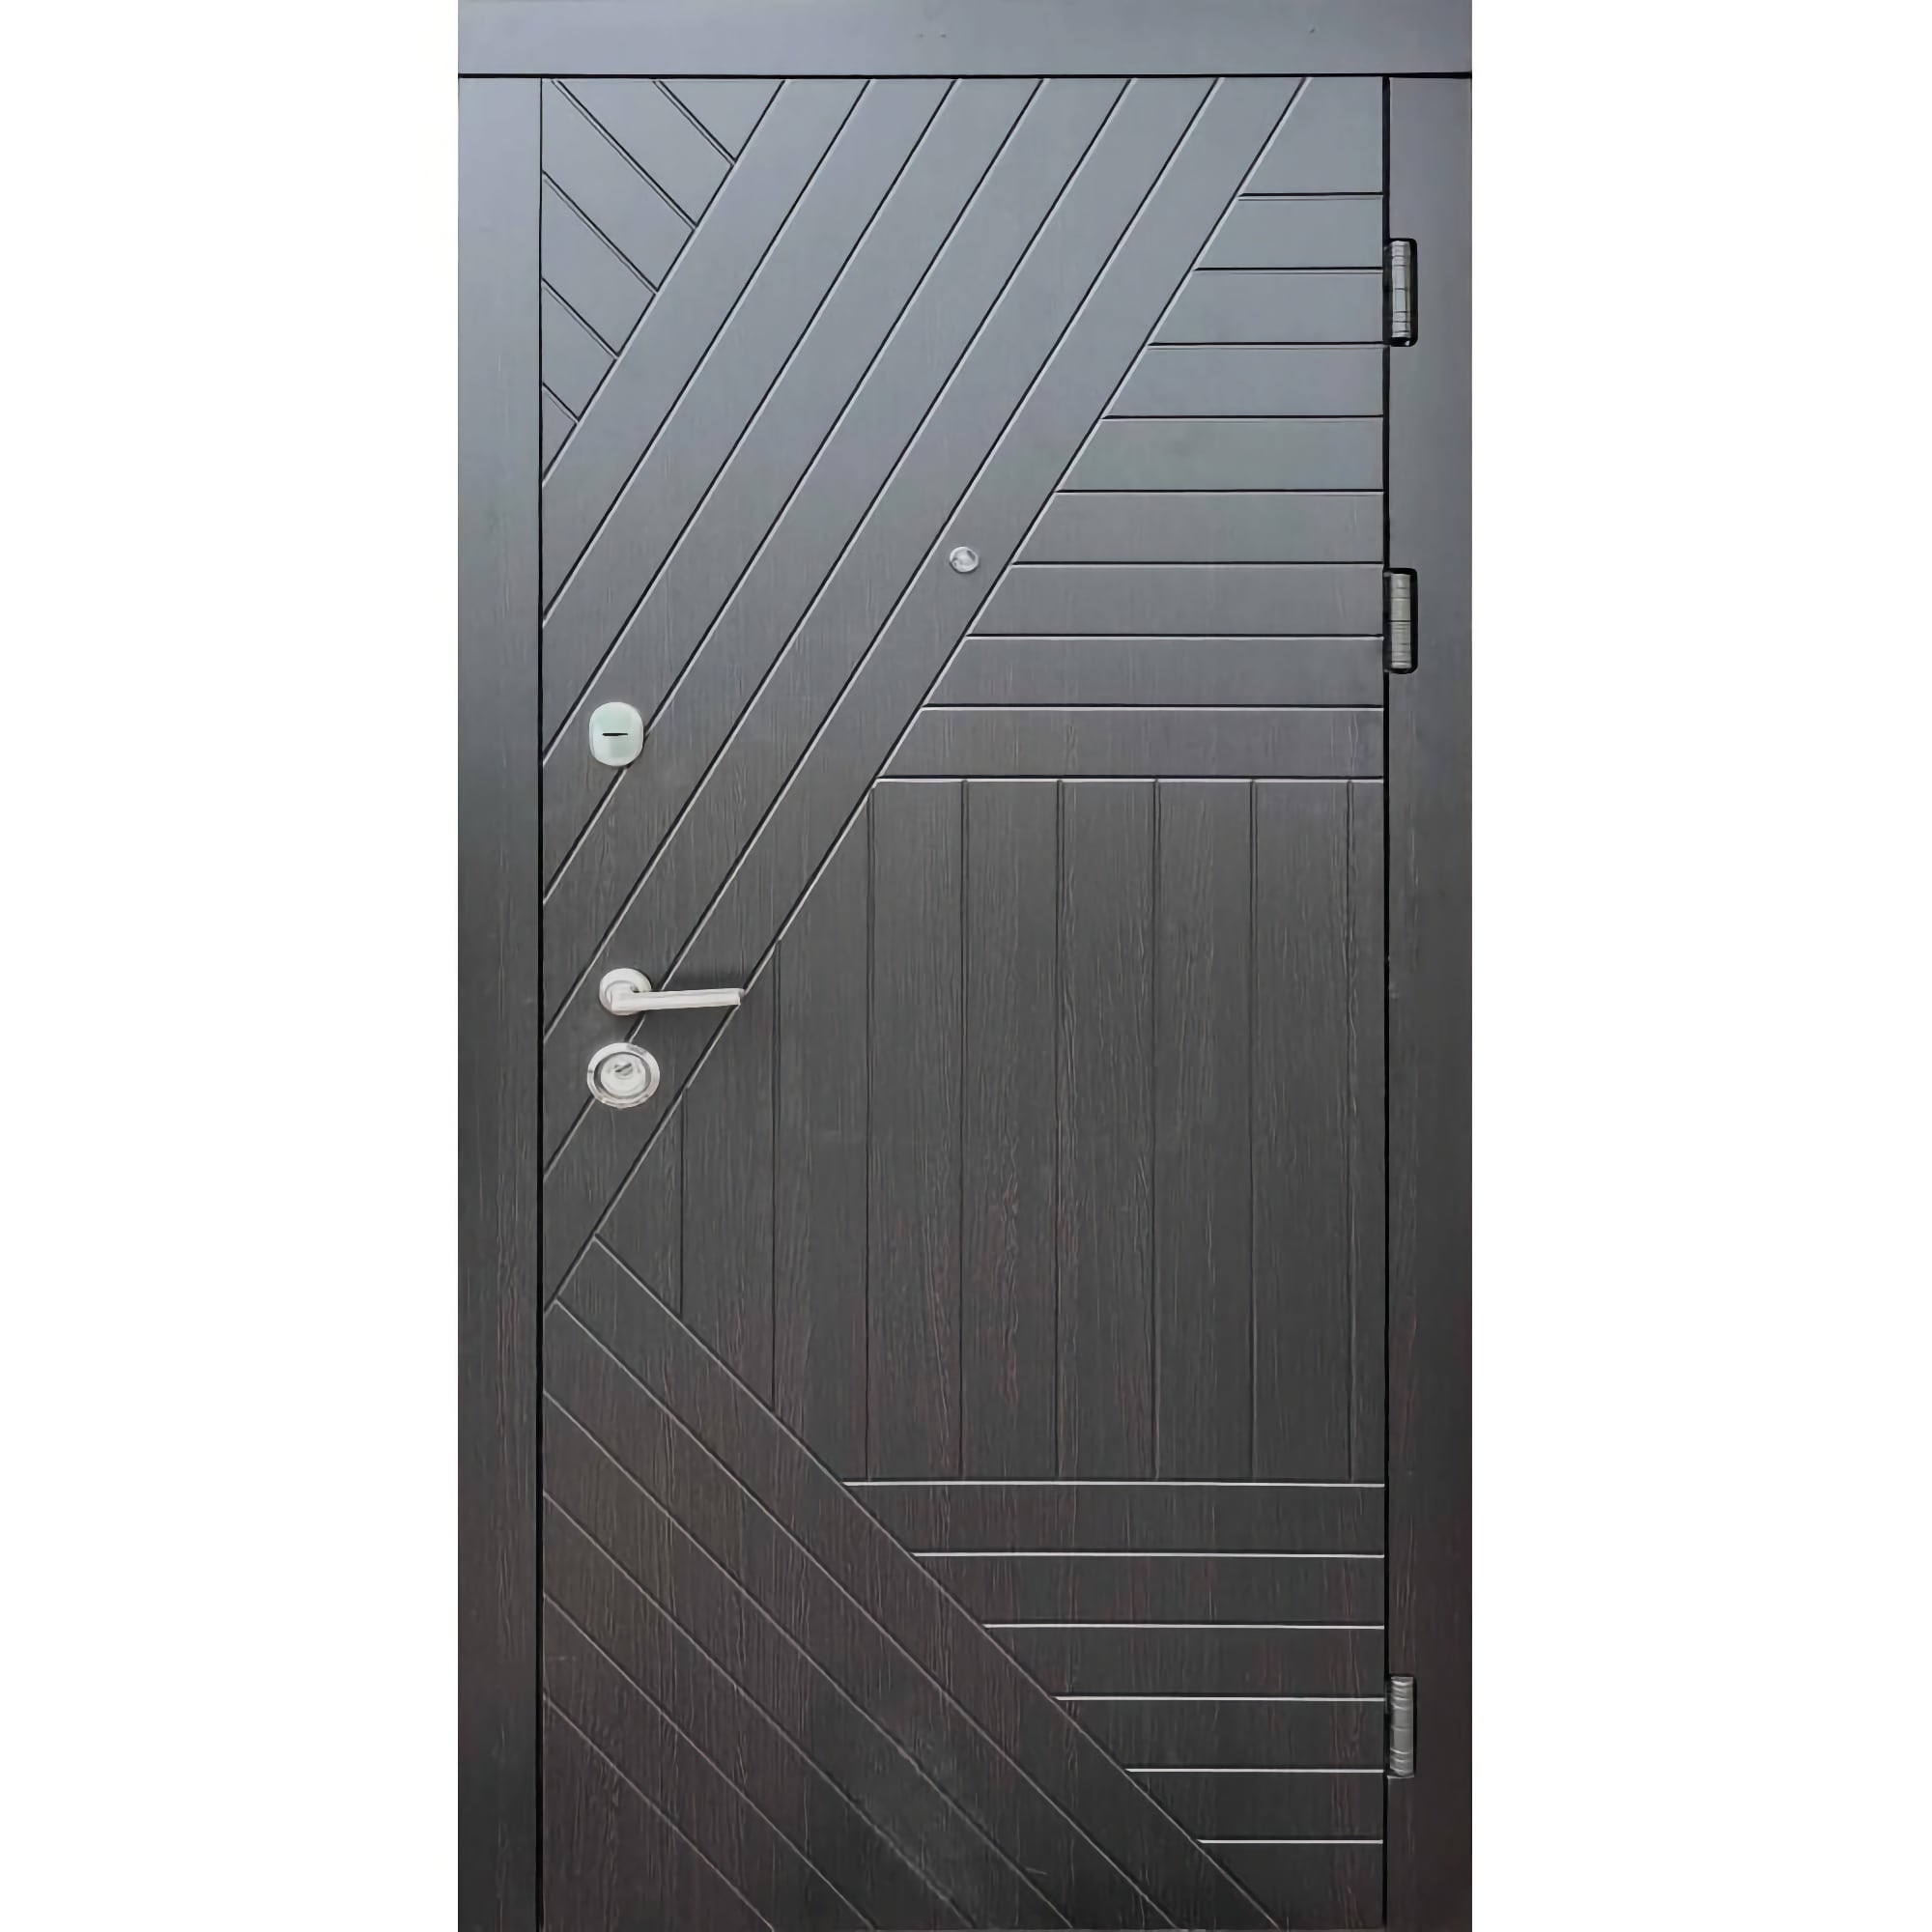 Вхідні двері з МДФ накладкою: відгуки та ціна у виставці дверей - Стандарт плюс Легіон 860